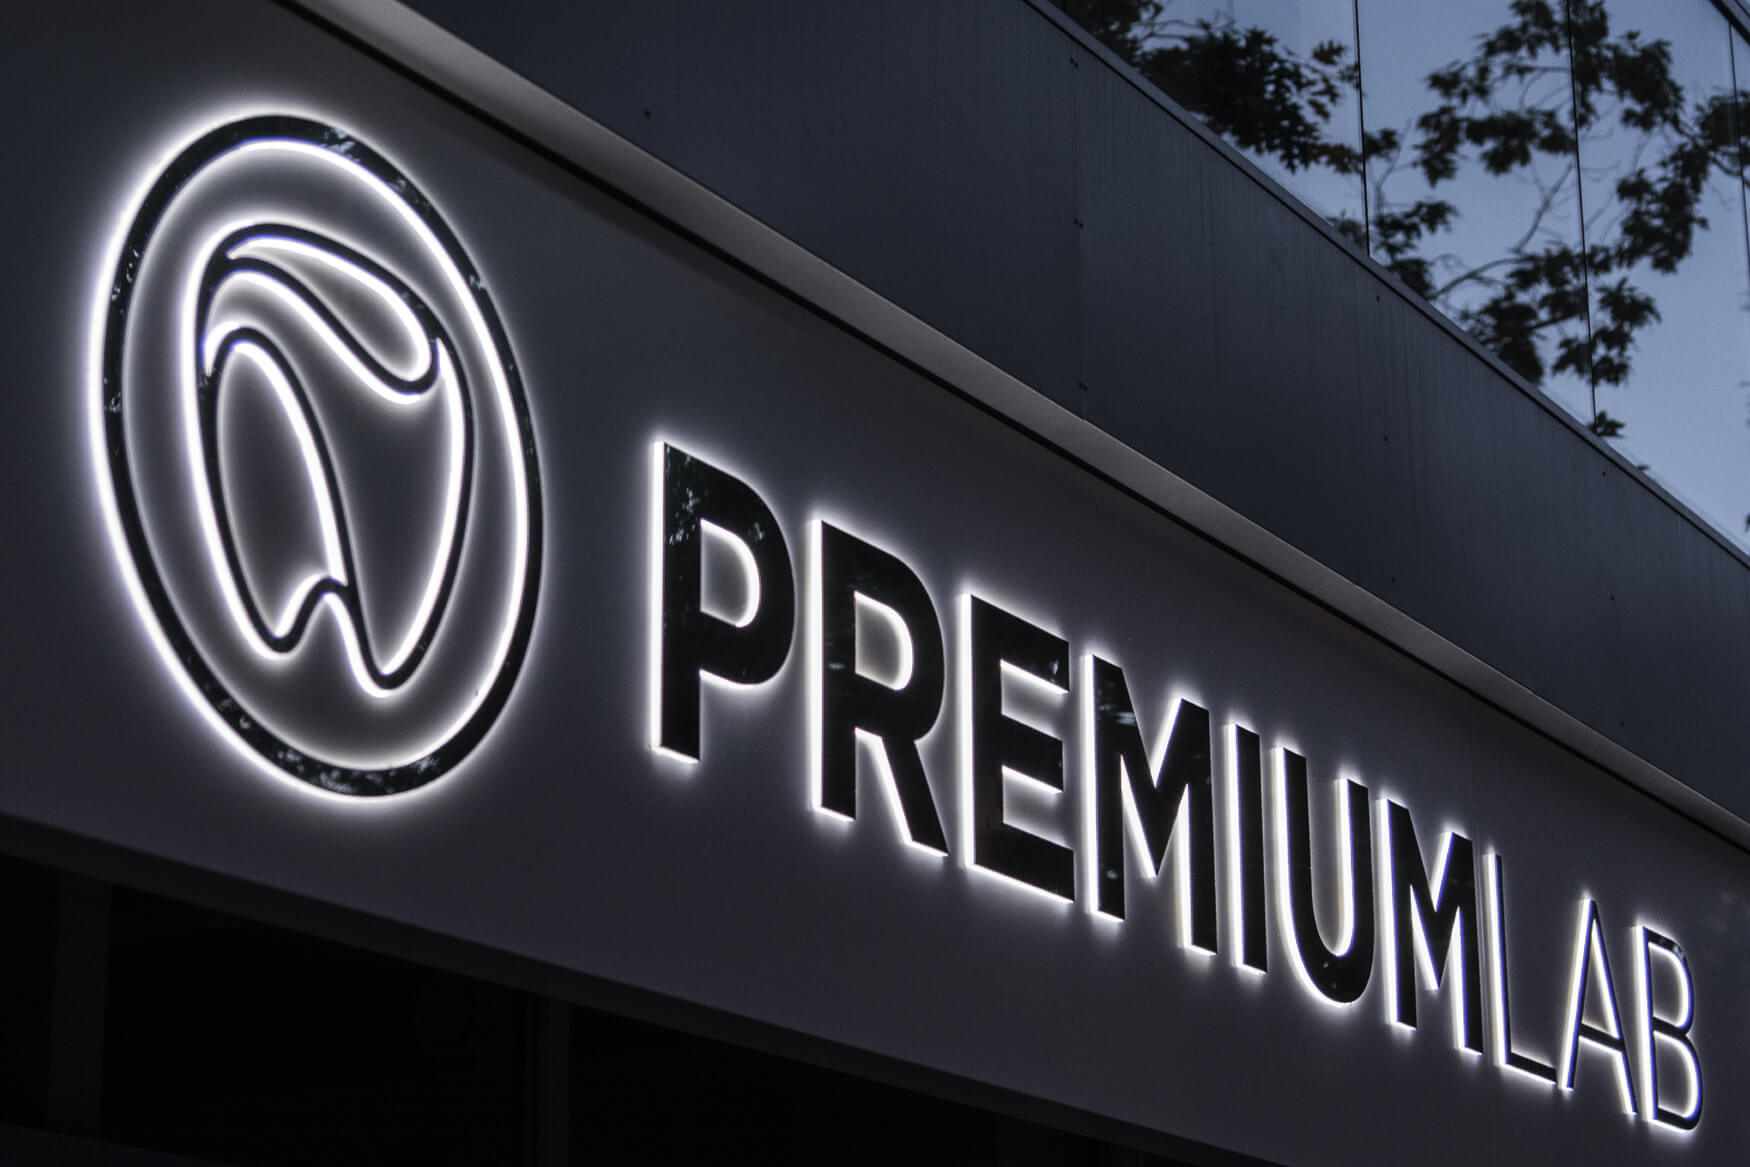 Premiumlab - Premiumlab - rótulo de empresa colocado en un cofre publicitario con letras metálicas espaciales